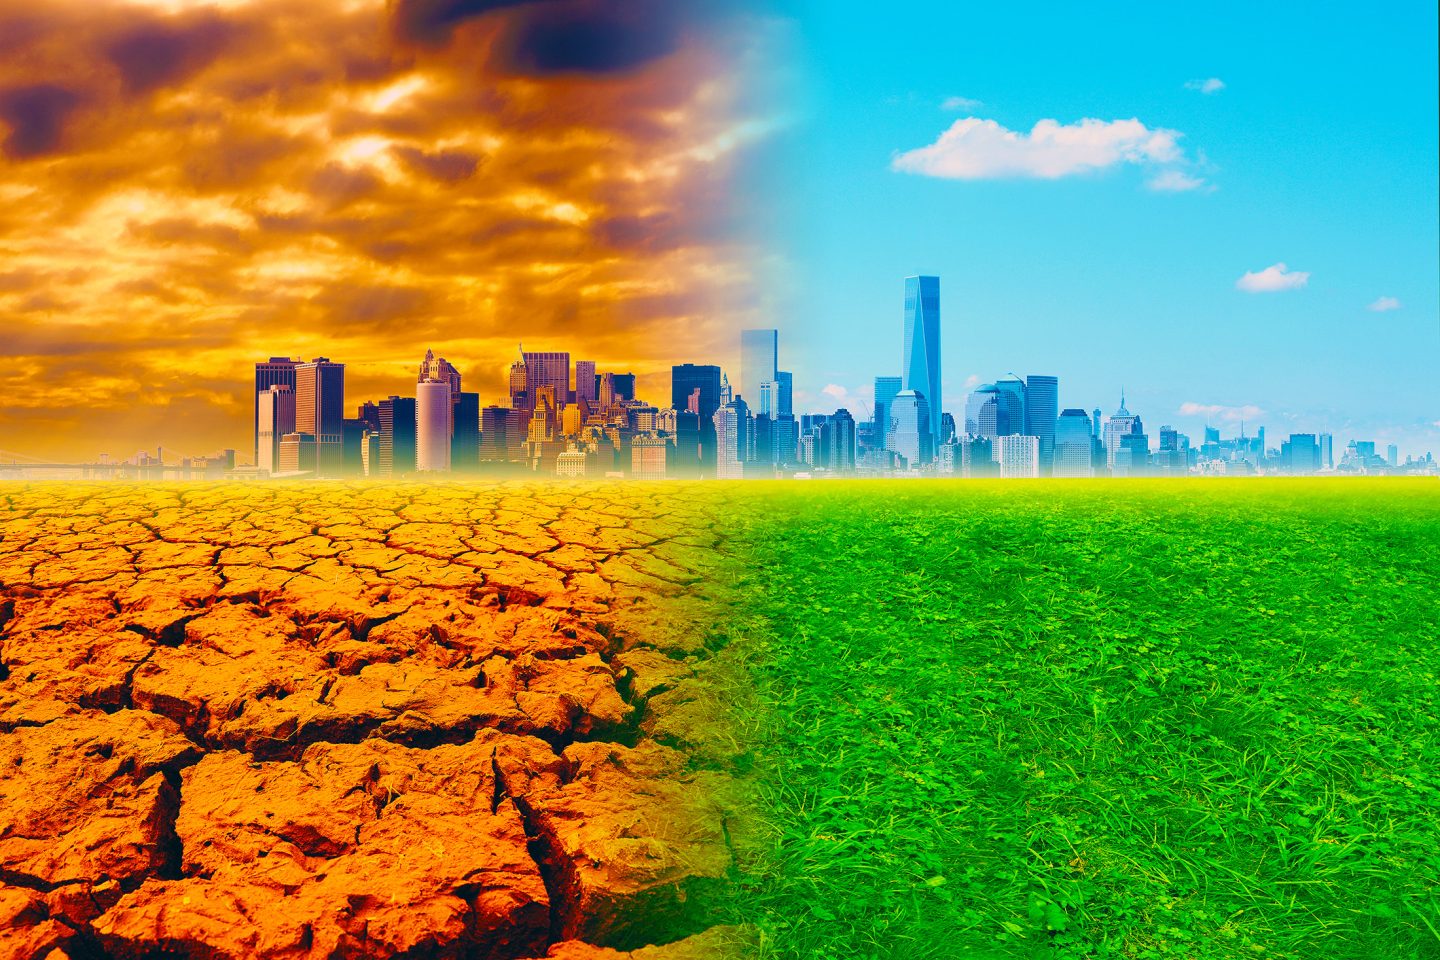 تغير المناخ قد يؤثر في استقرار المنازل والأبنية على سطح الأرض